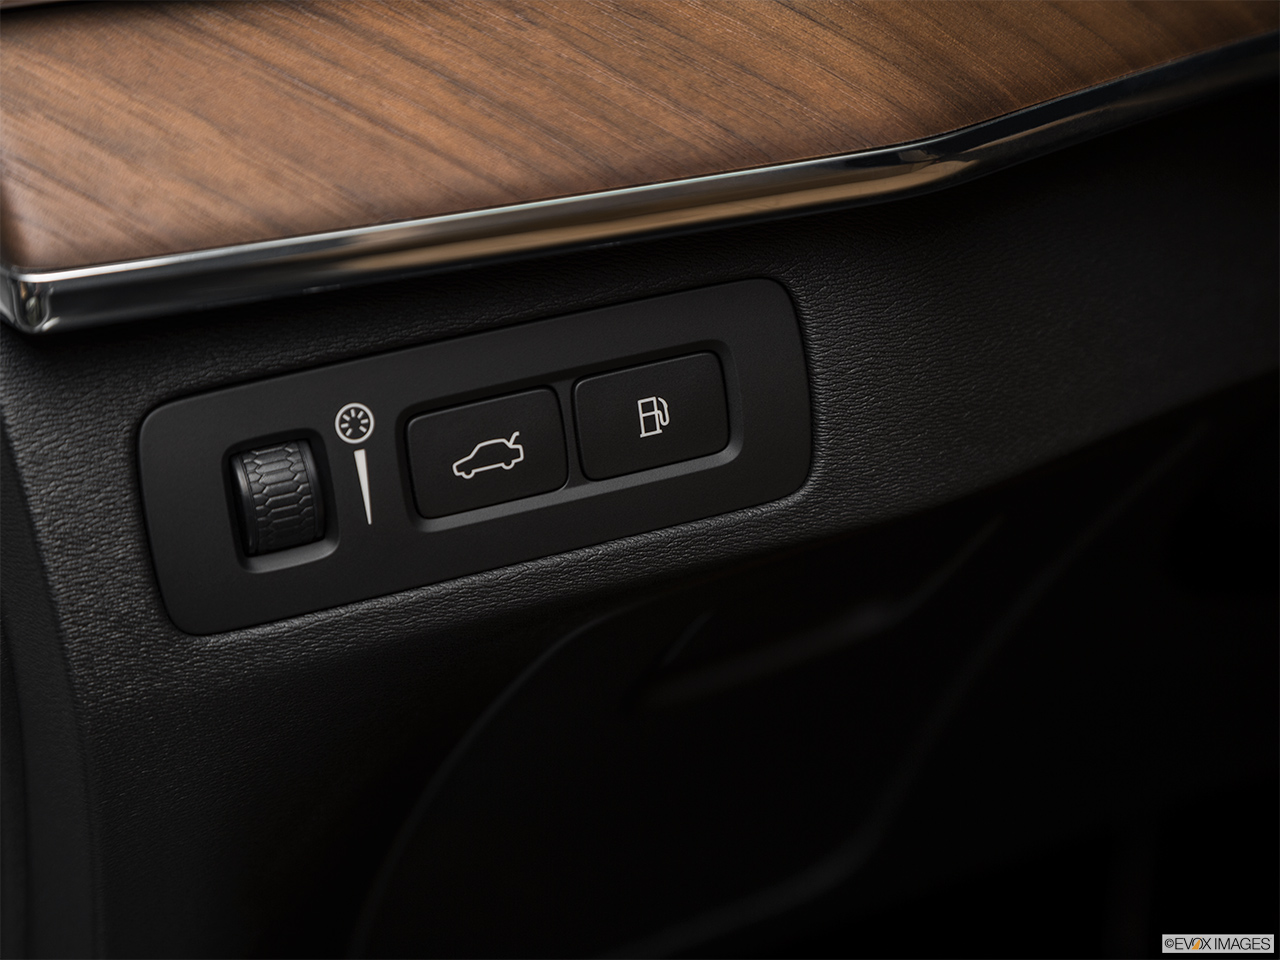 2019 Volvo XC90  T8 Inscription eAWD Plug-in Hybrid Gas cap release. 